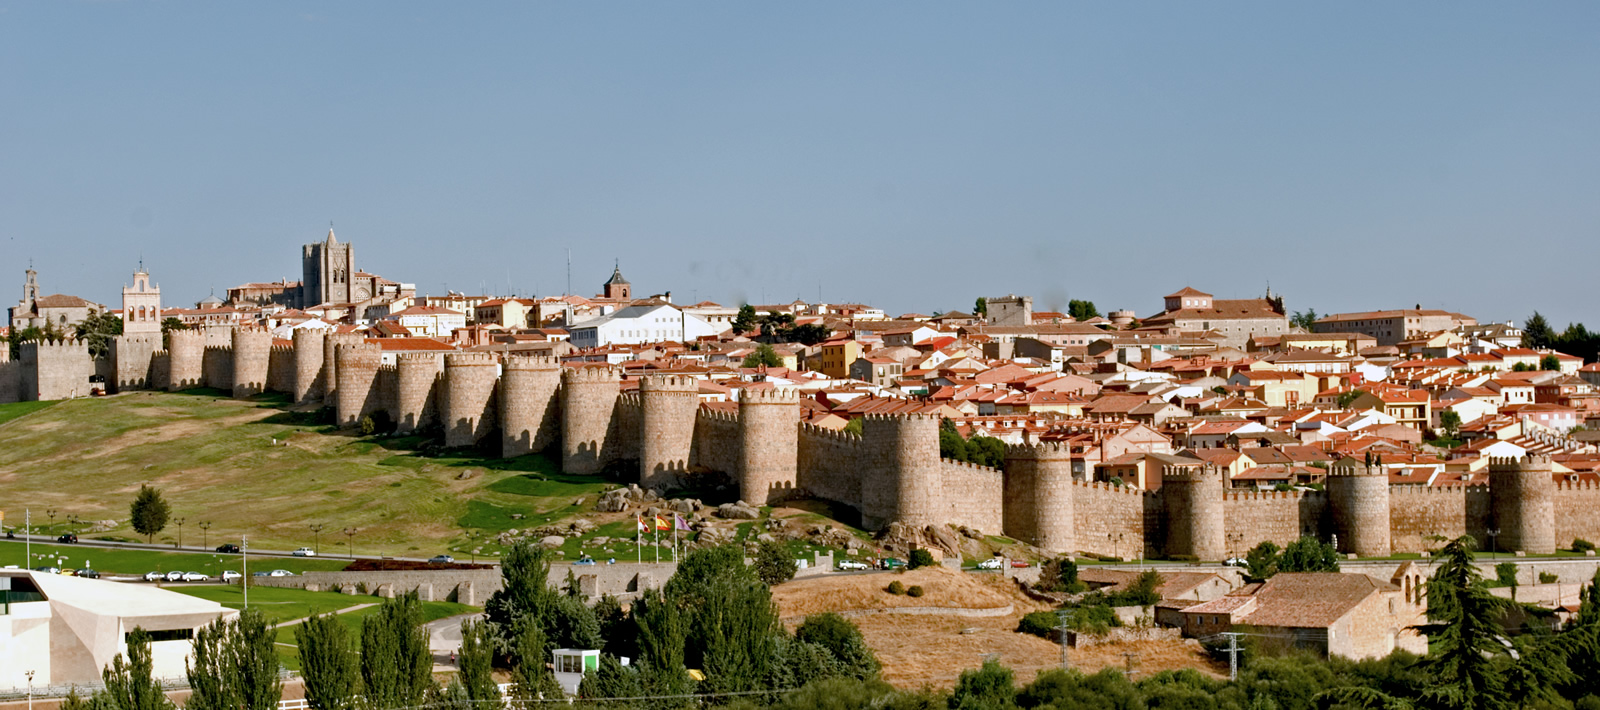 the city walls of Avila